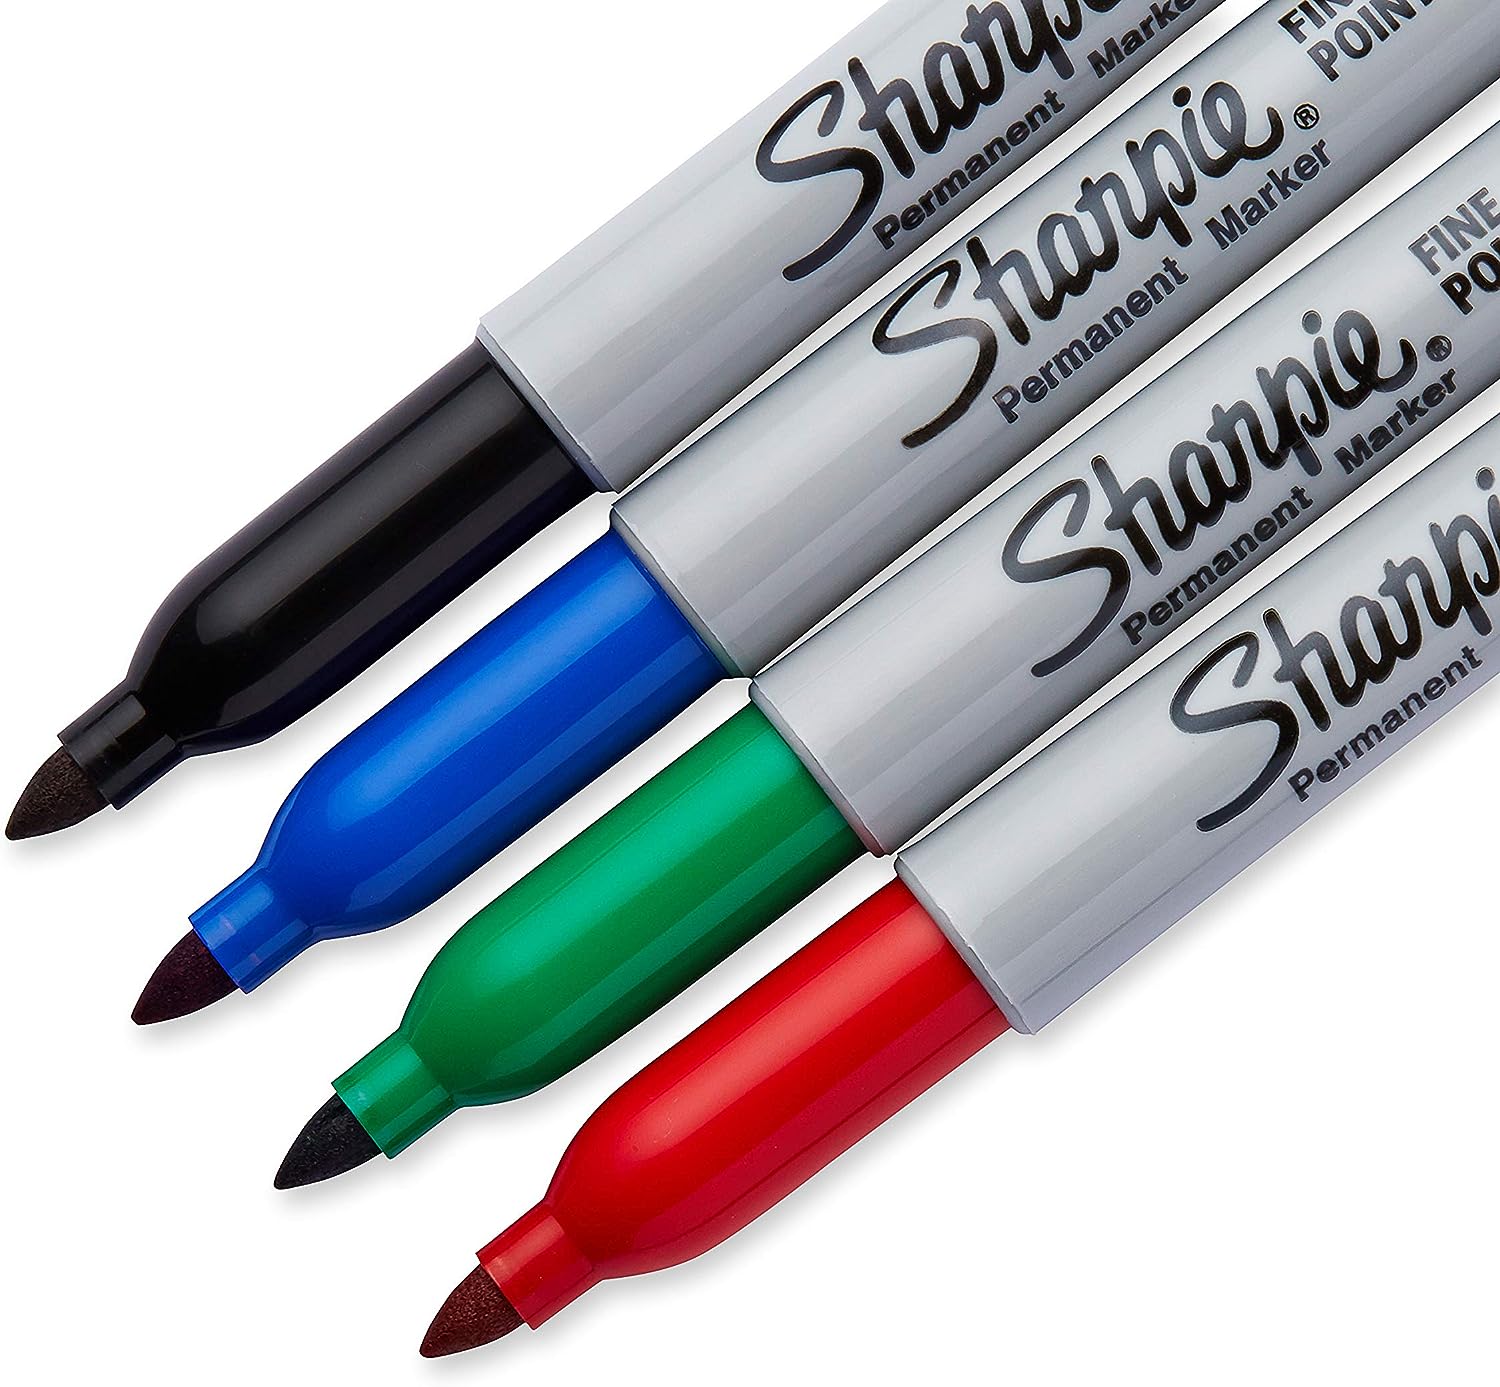 Sharpie - Permanente marker - 4 pack - boete